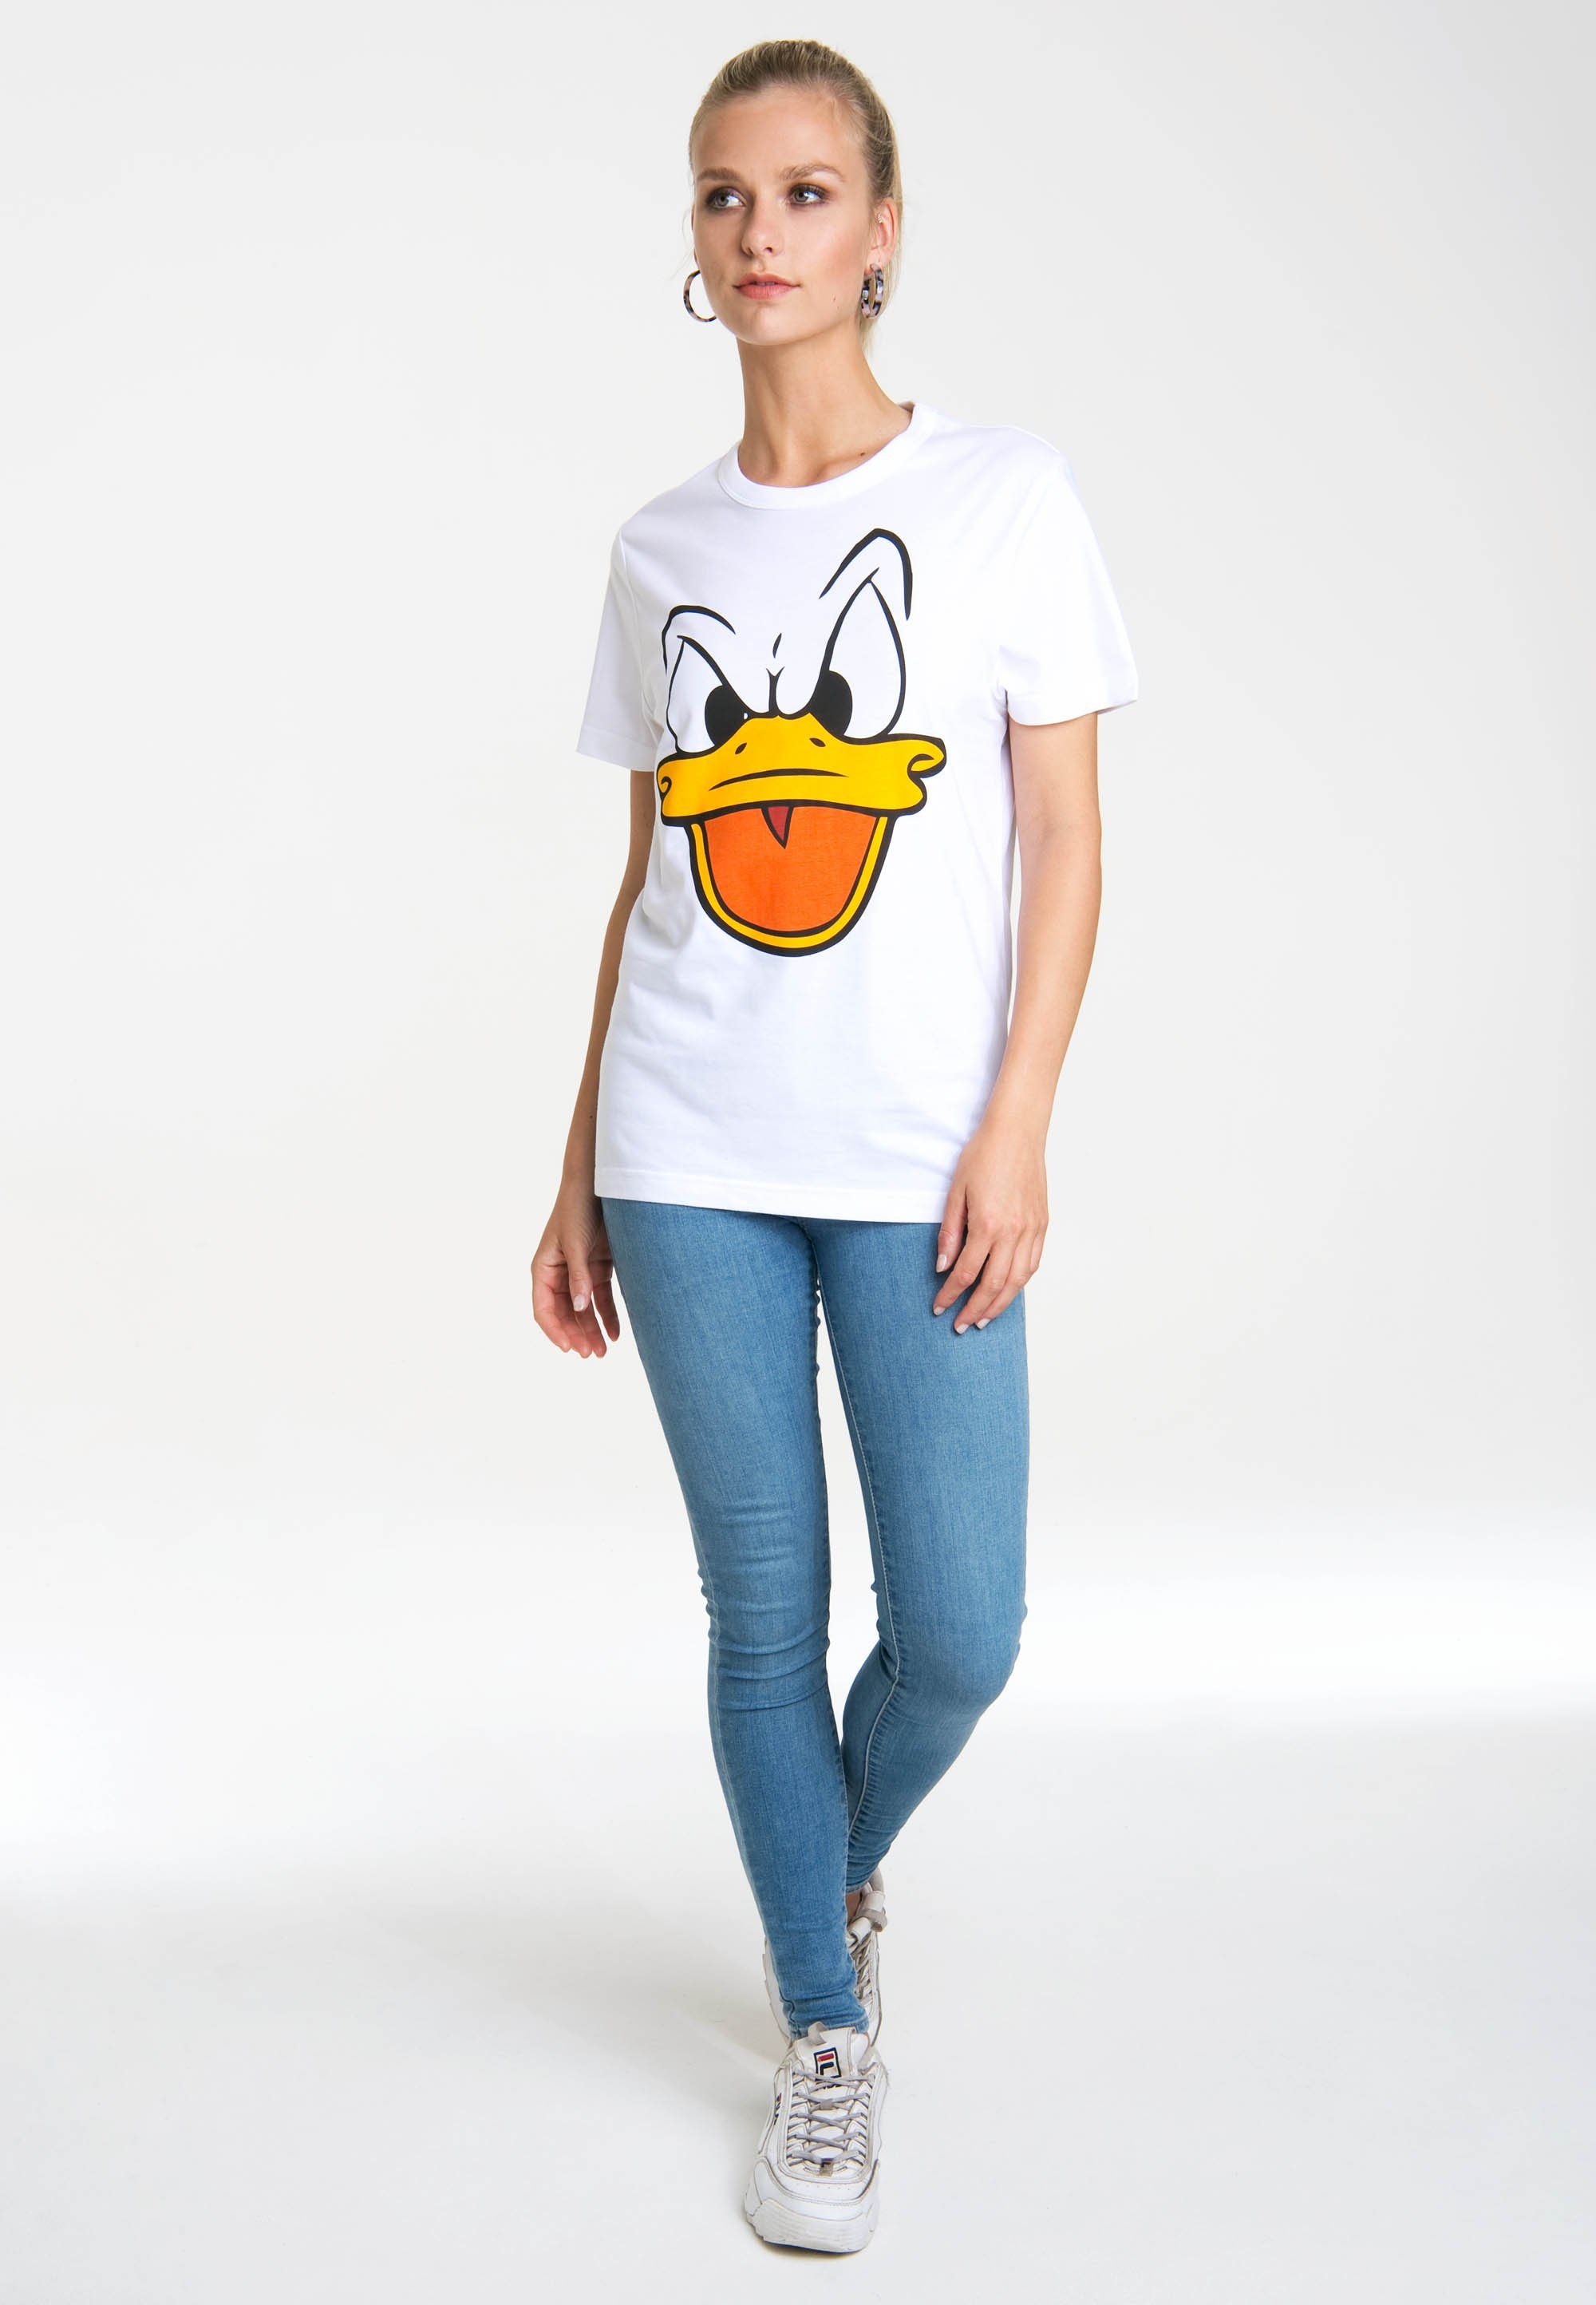 LOGOSHIRT T-Shirt Donald – Originaldesign mit Duck Face lizenziertem